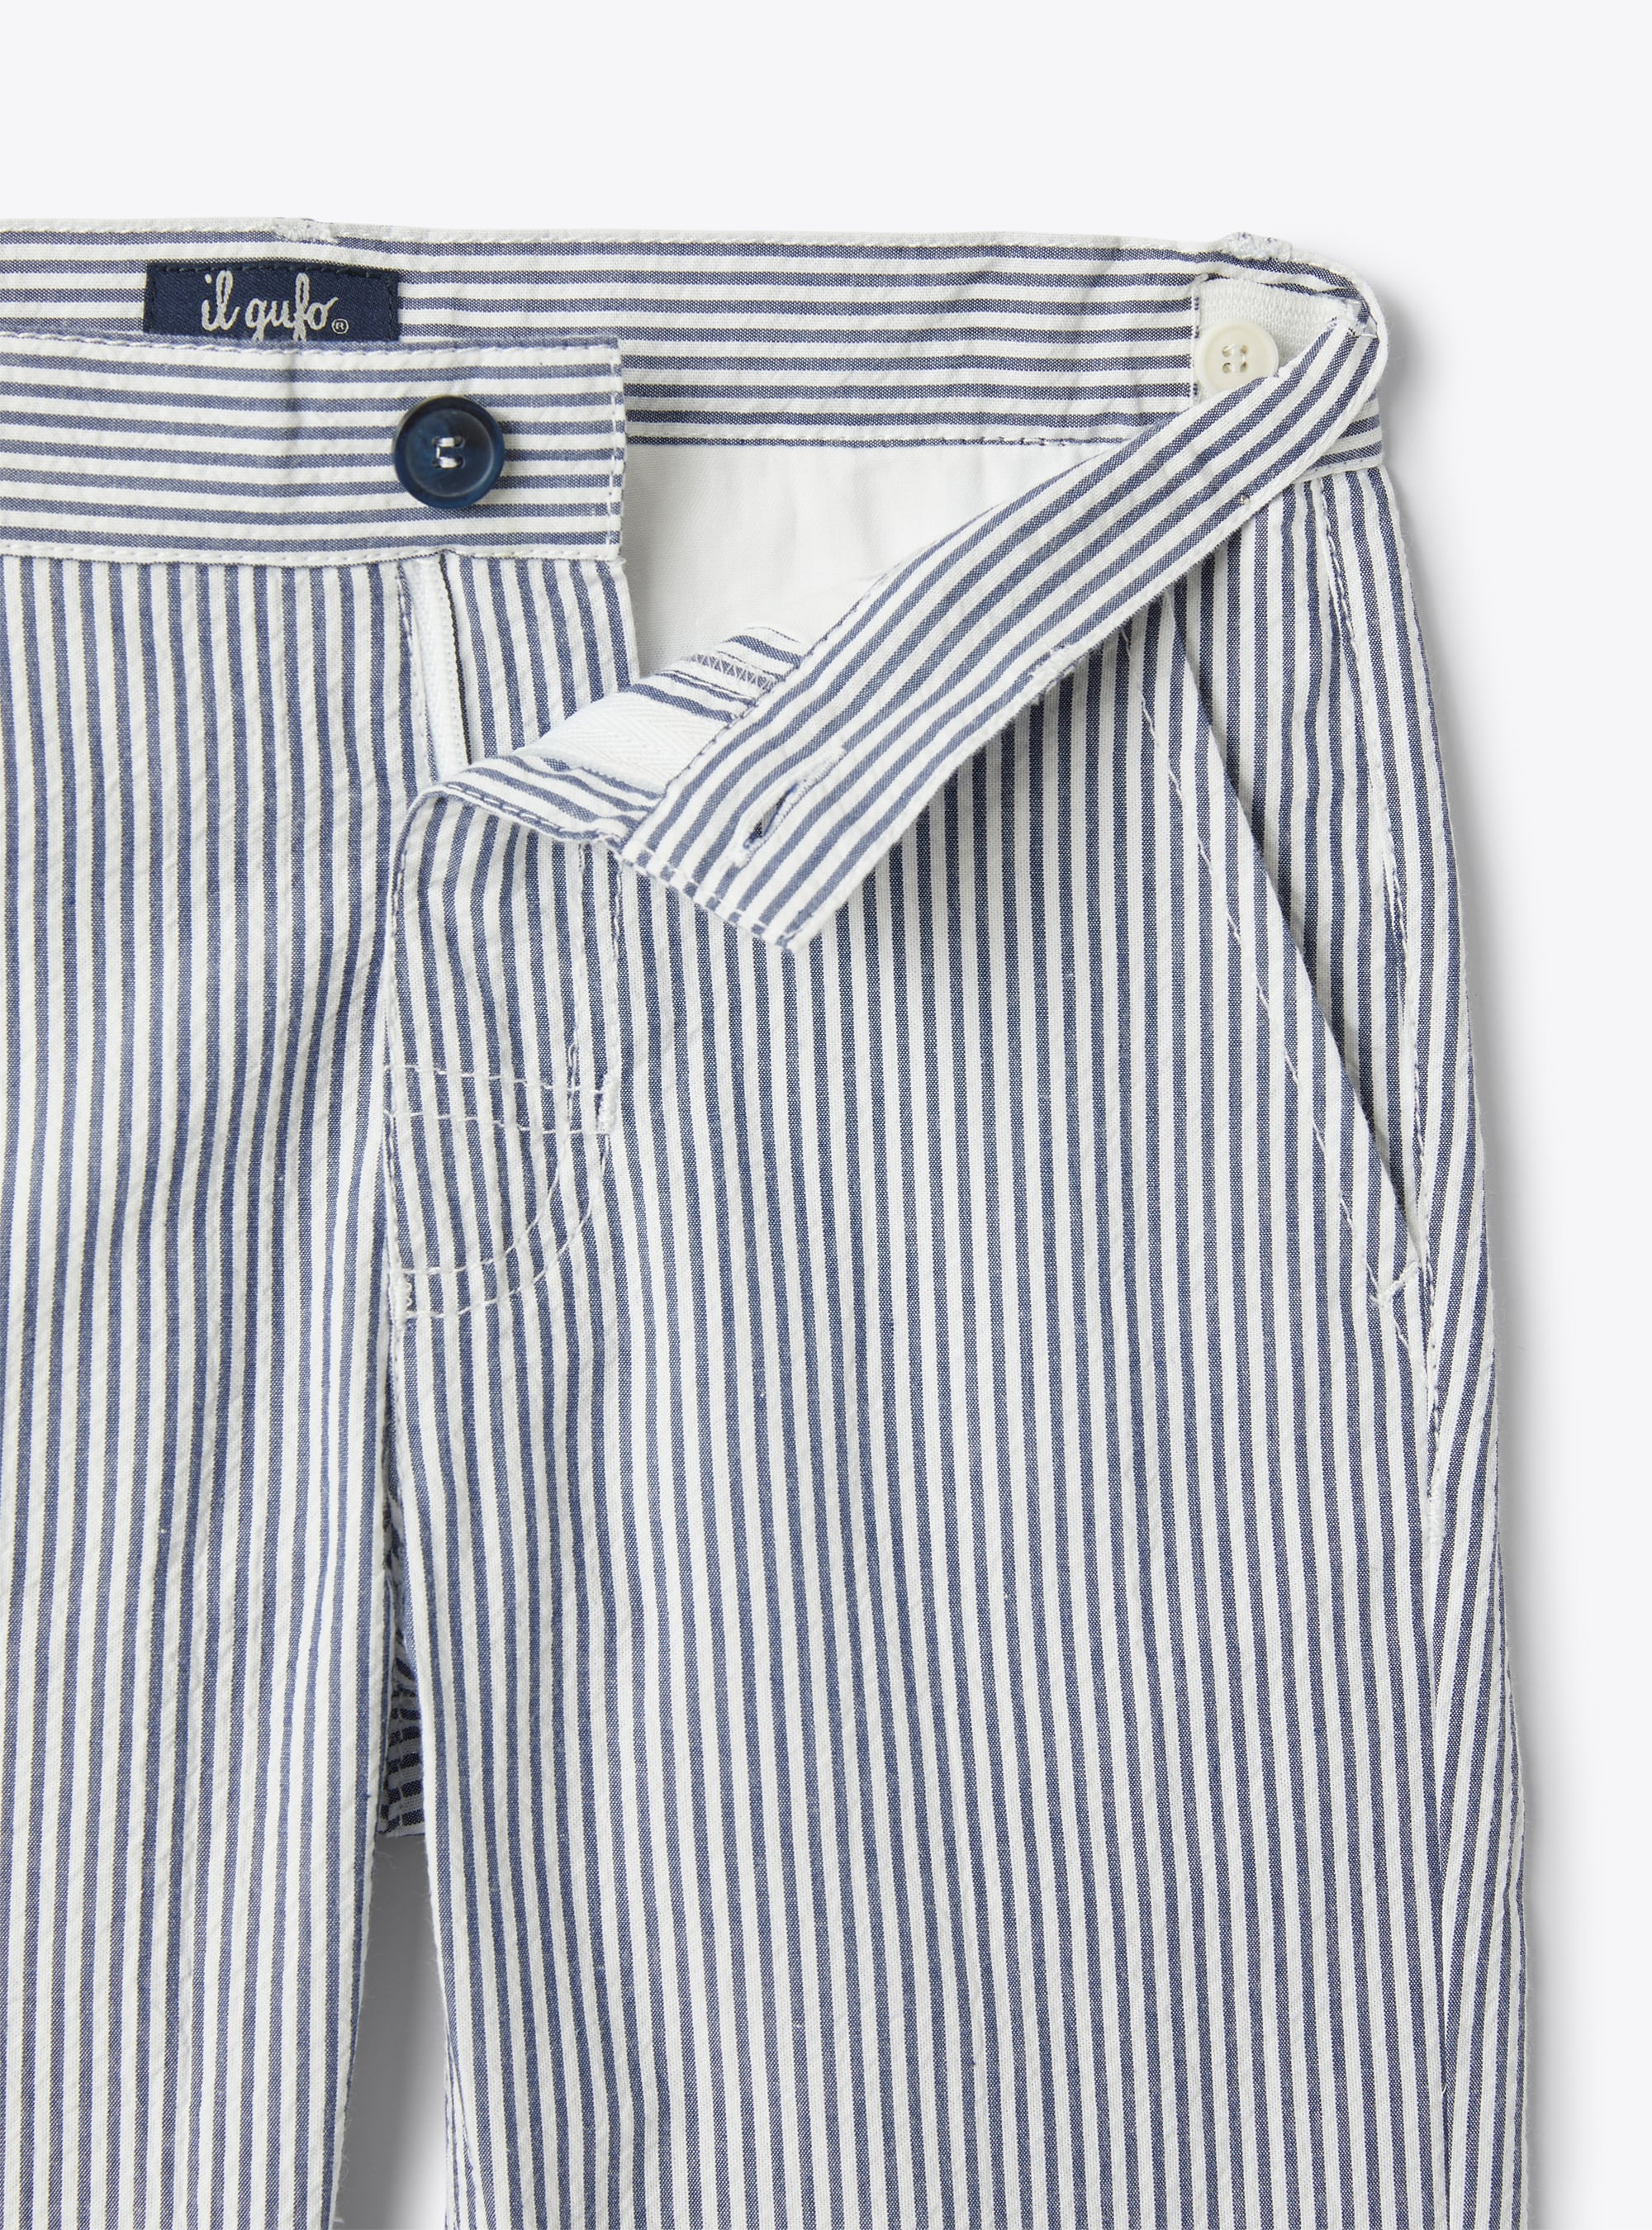 Pantalone lungo in seersucker a righe blu e bianche - Blu | Il Gufo